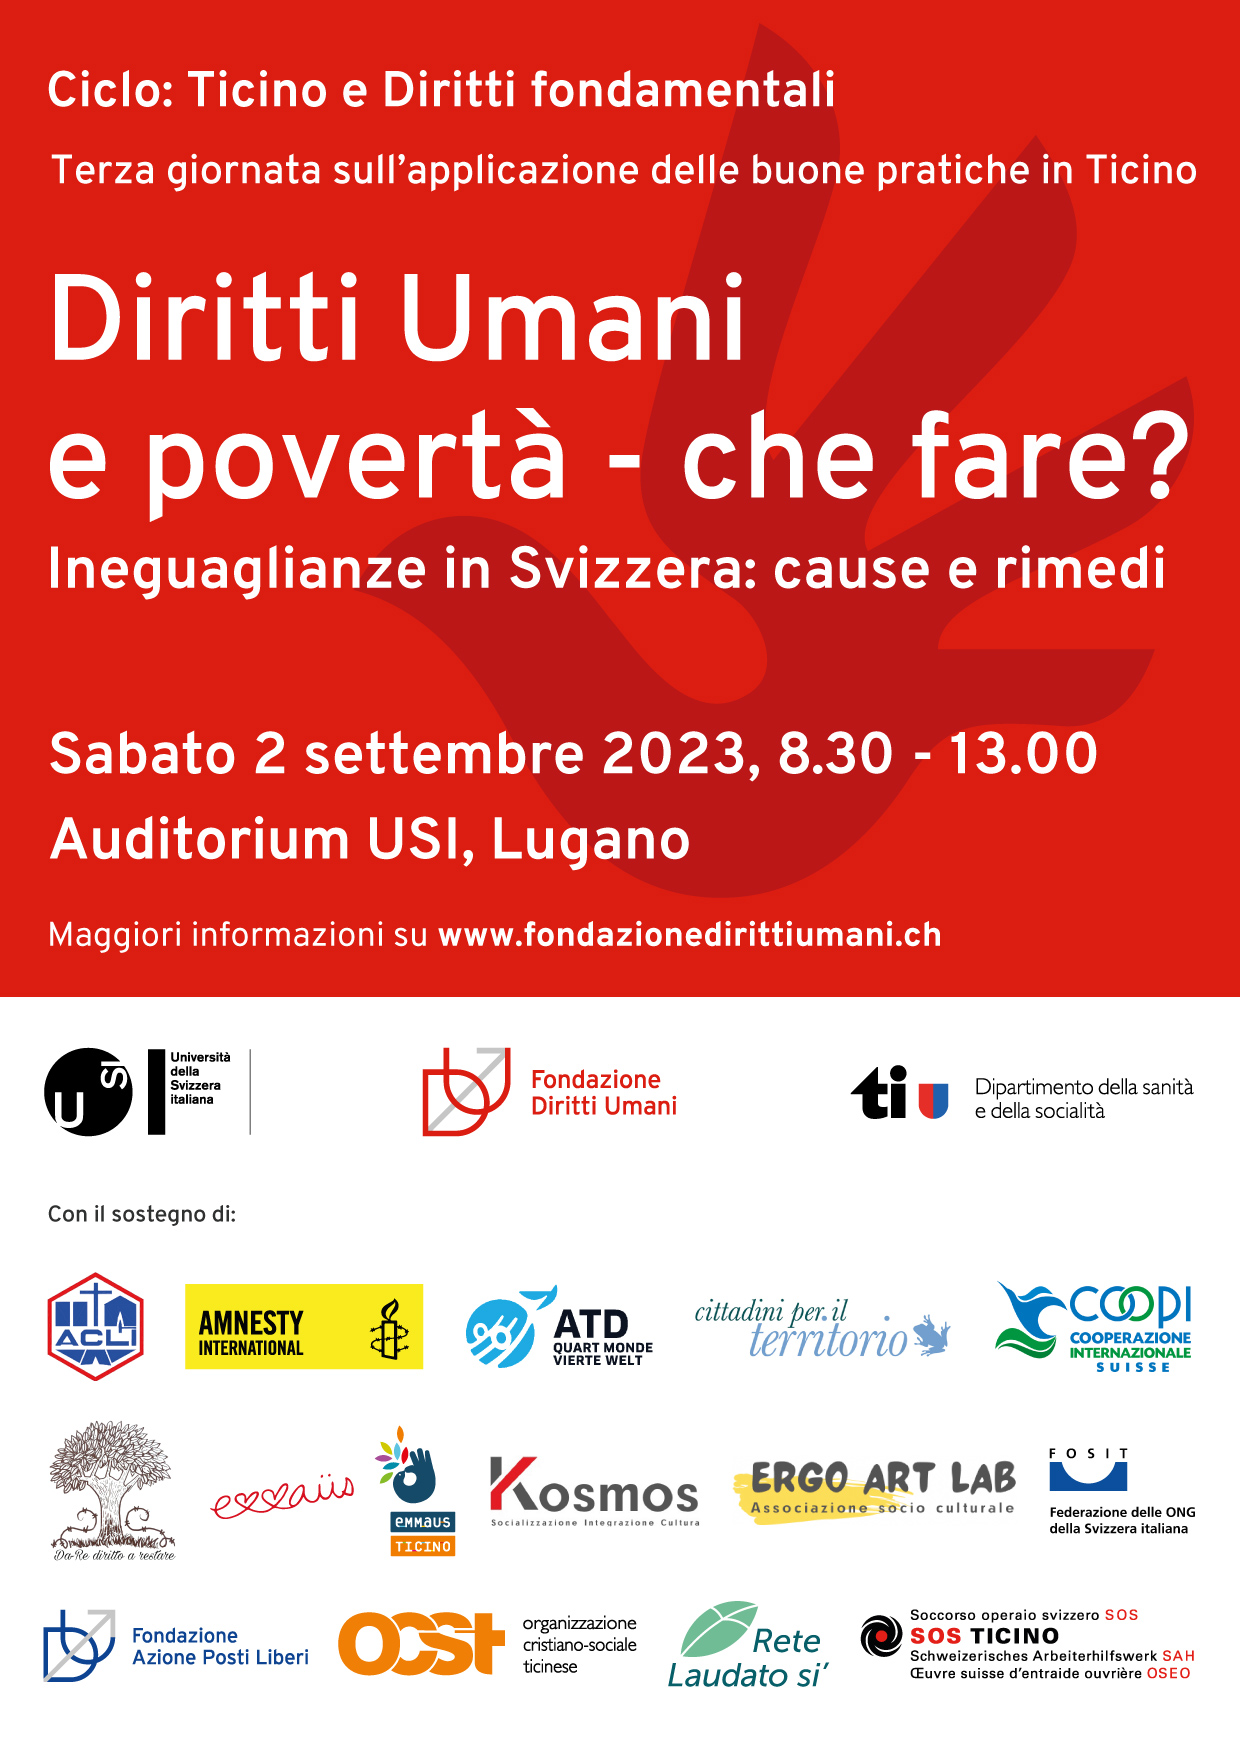 “Diritti Umani e povertà: che fare?”: anche COOPI Suisse parteciperà al Convegno che si terrà presso l’Auditorio dell’Università della Svizzera Italiana